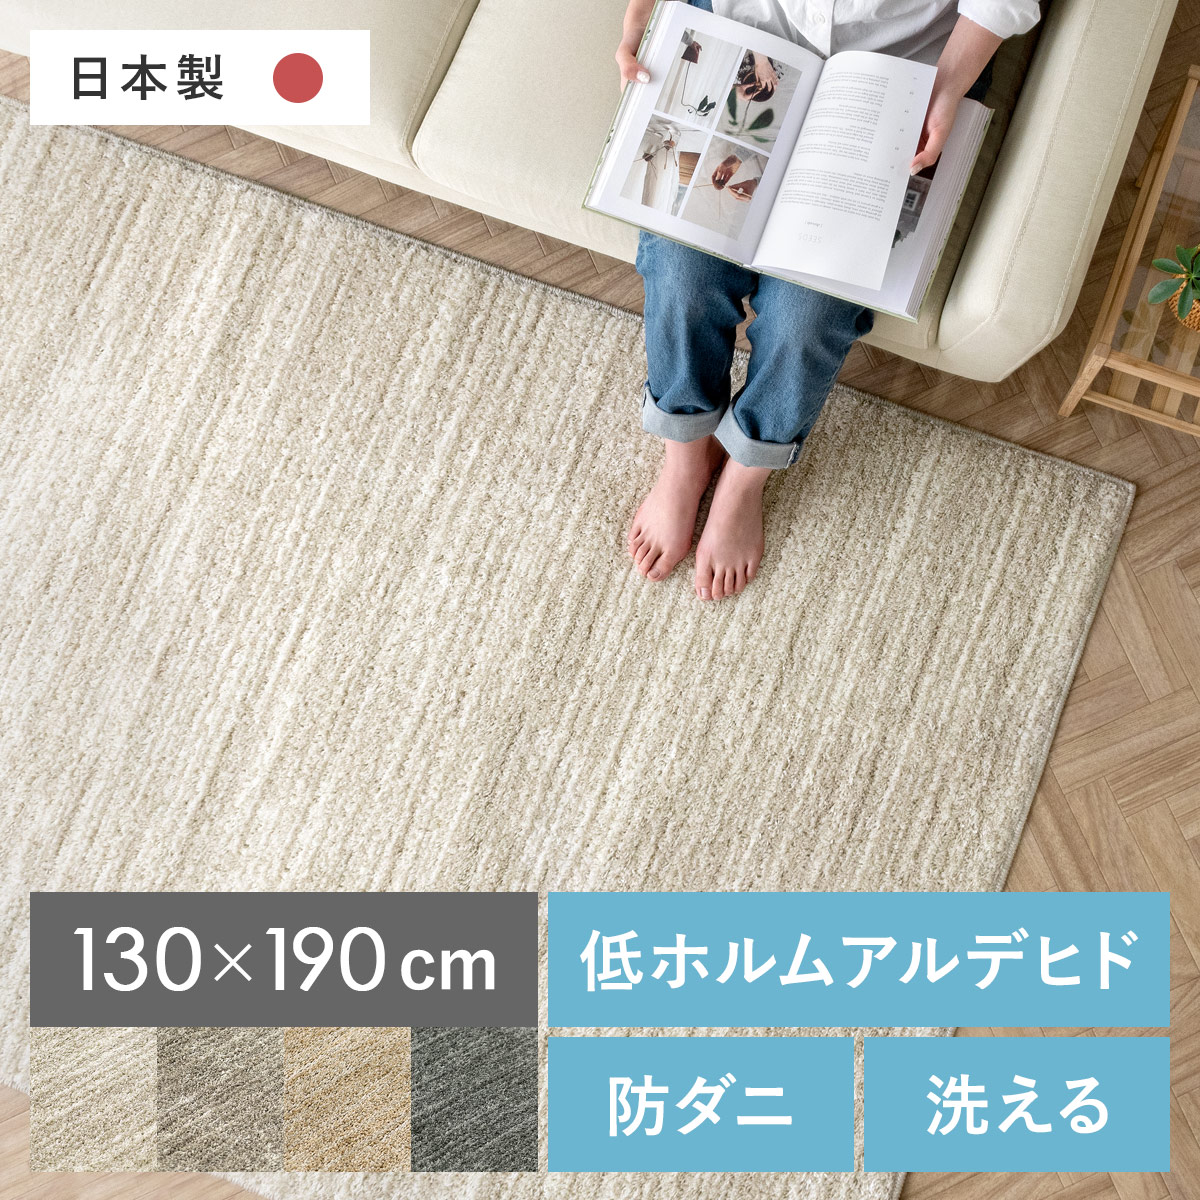 家具・インテリアカーペット【ジェイド】130×190